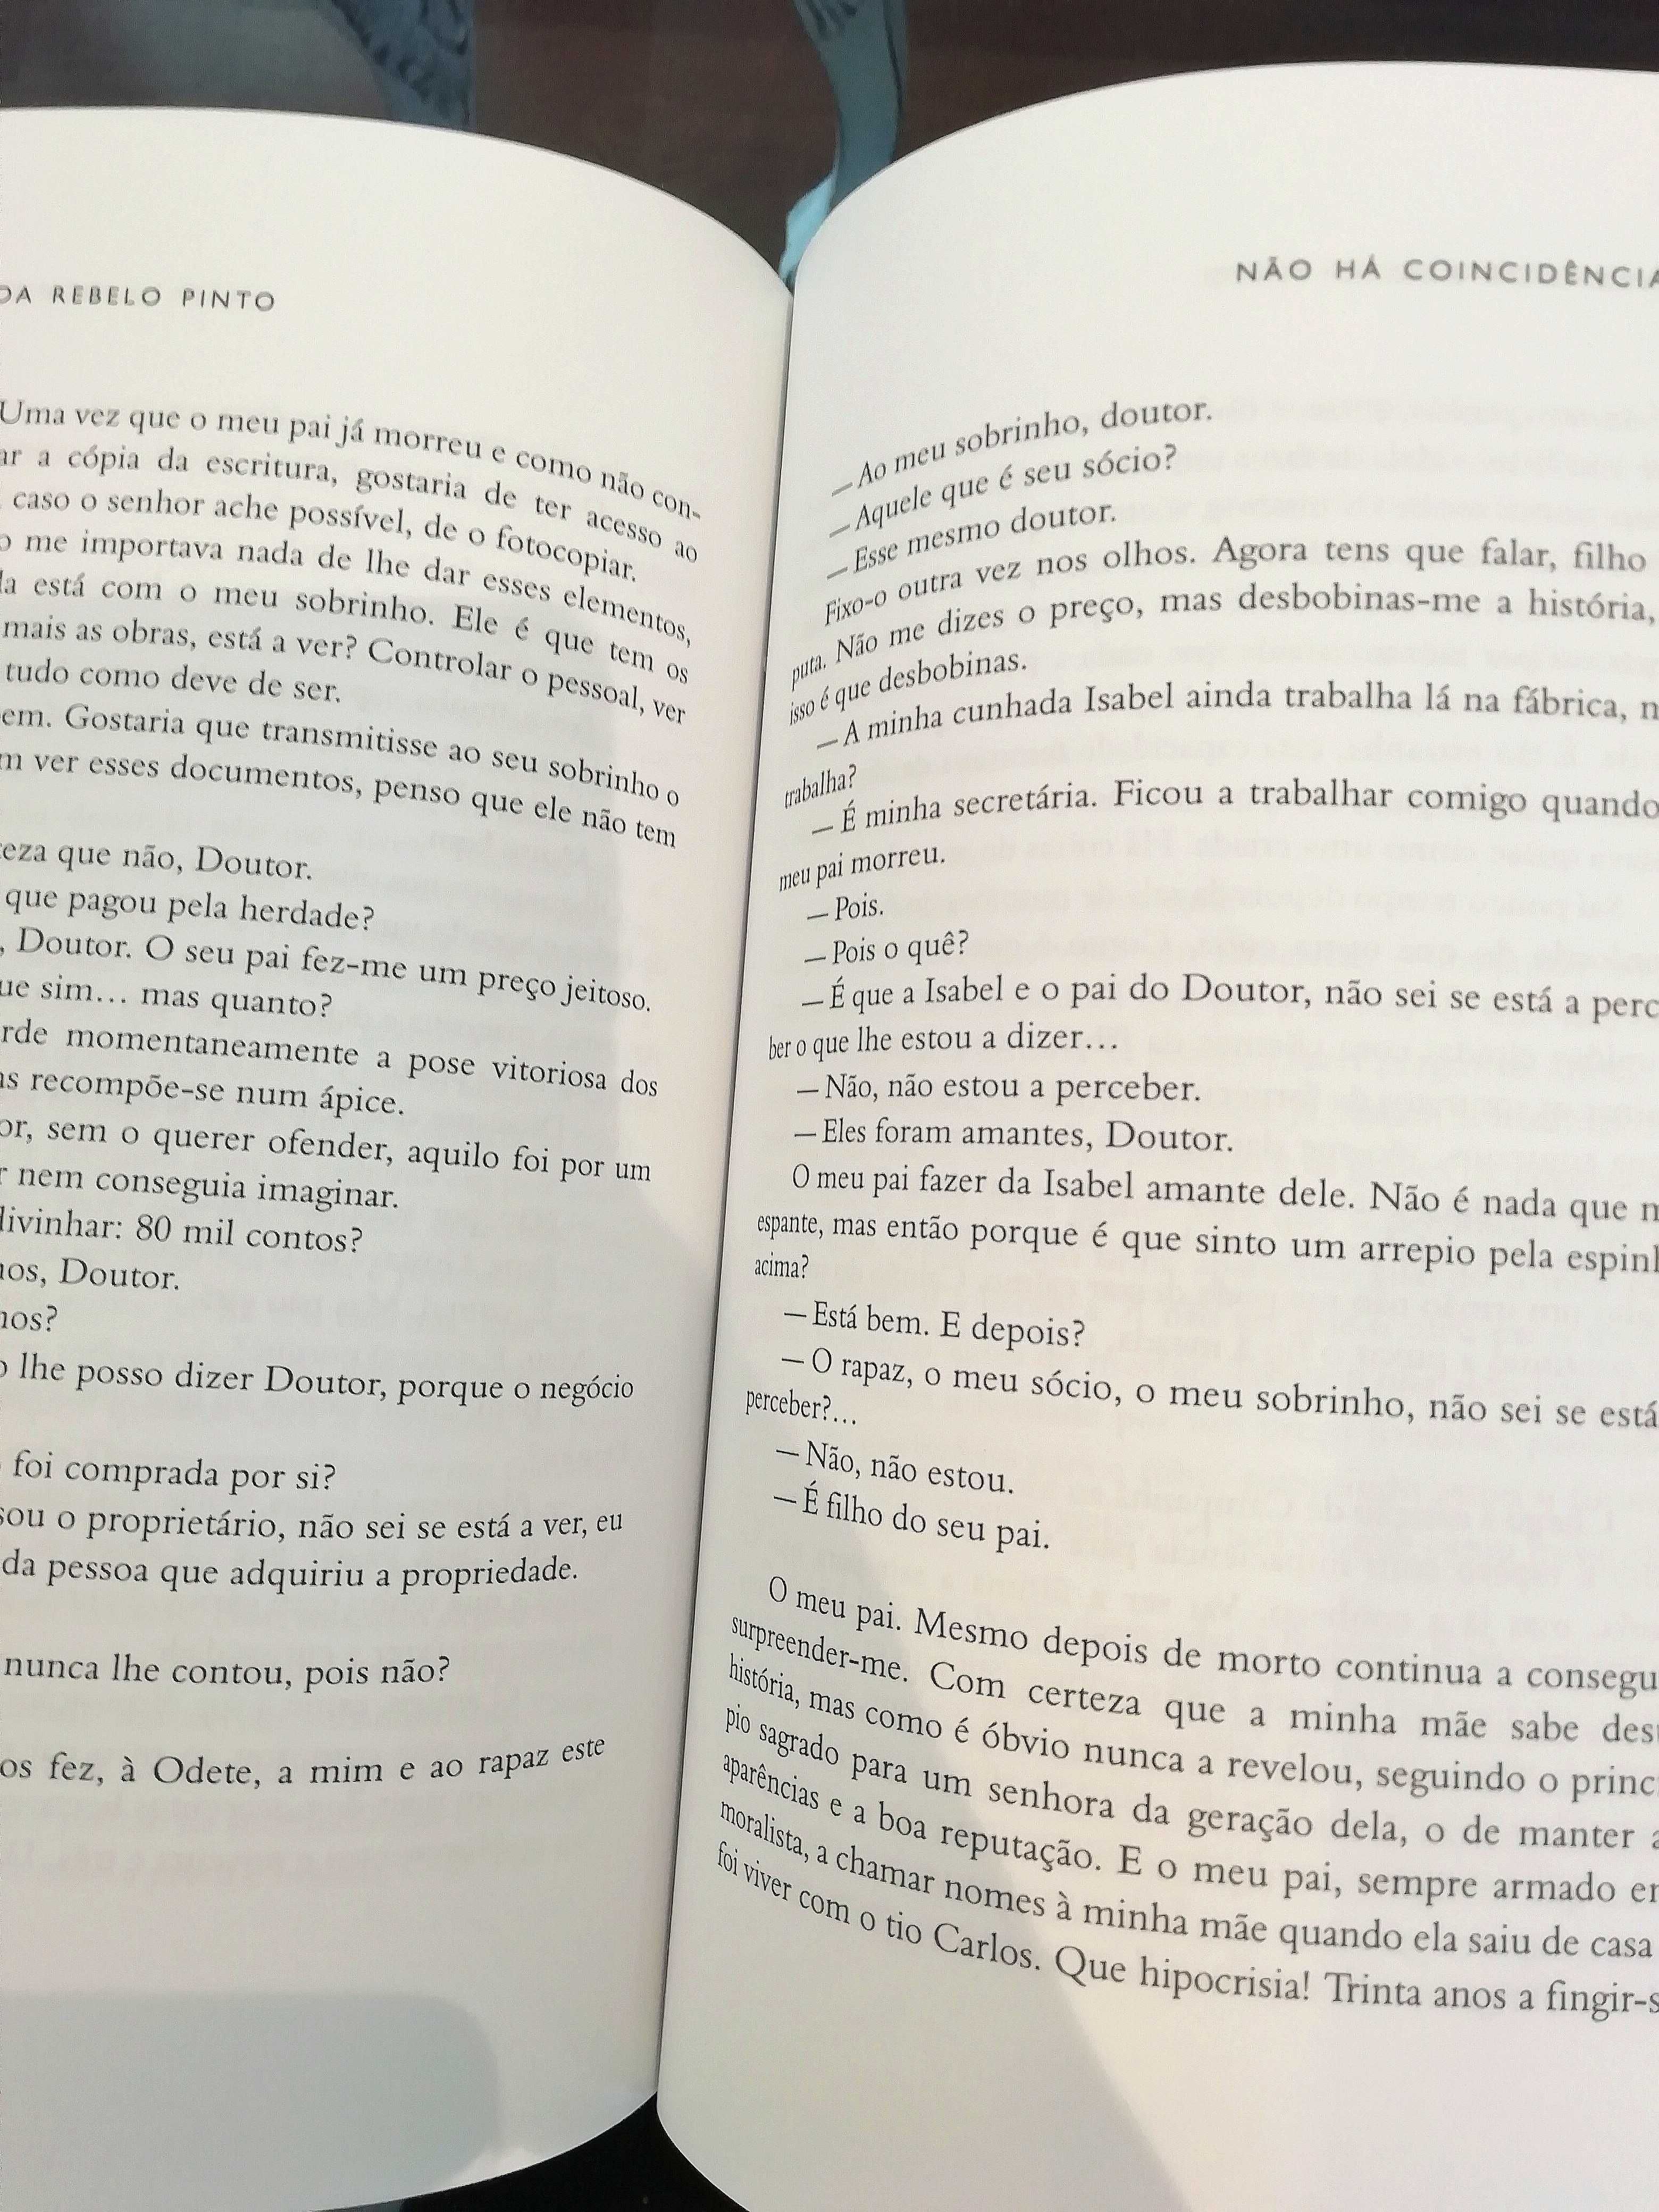 Livro "Não há coincidências" de Margarida Rebelo Pinto